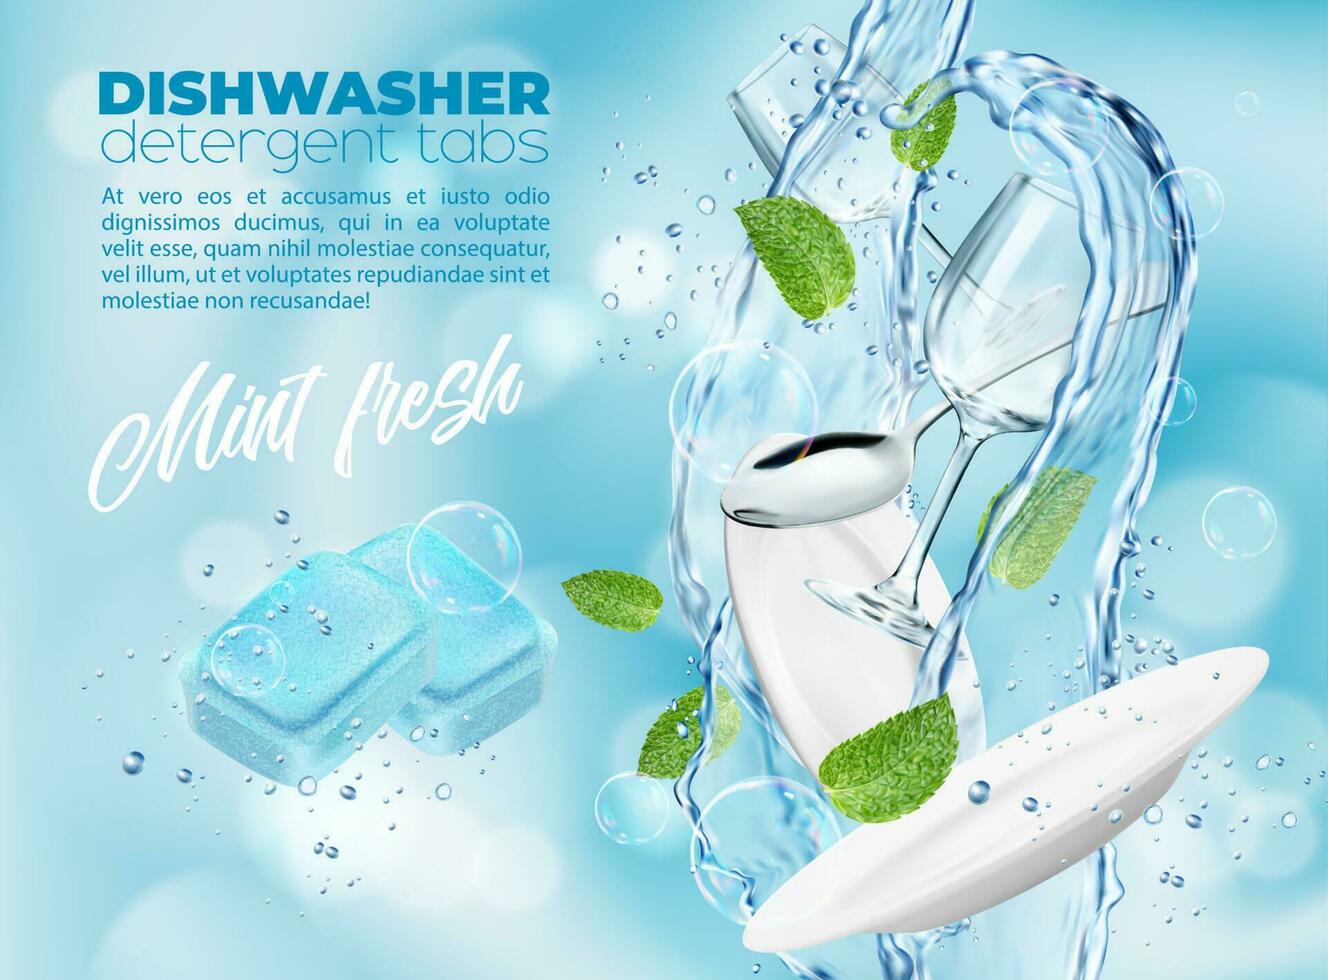 lavavajillas detergente tabletas con frio menta, plato vector